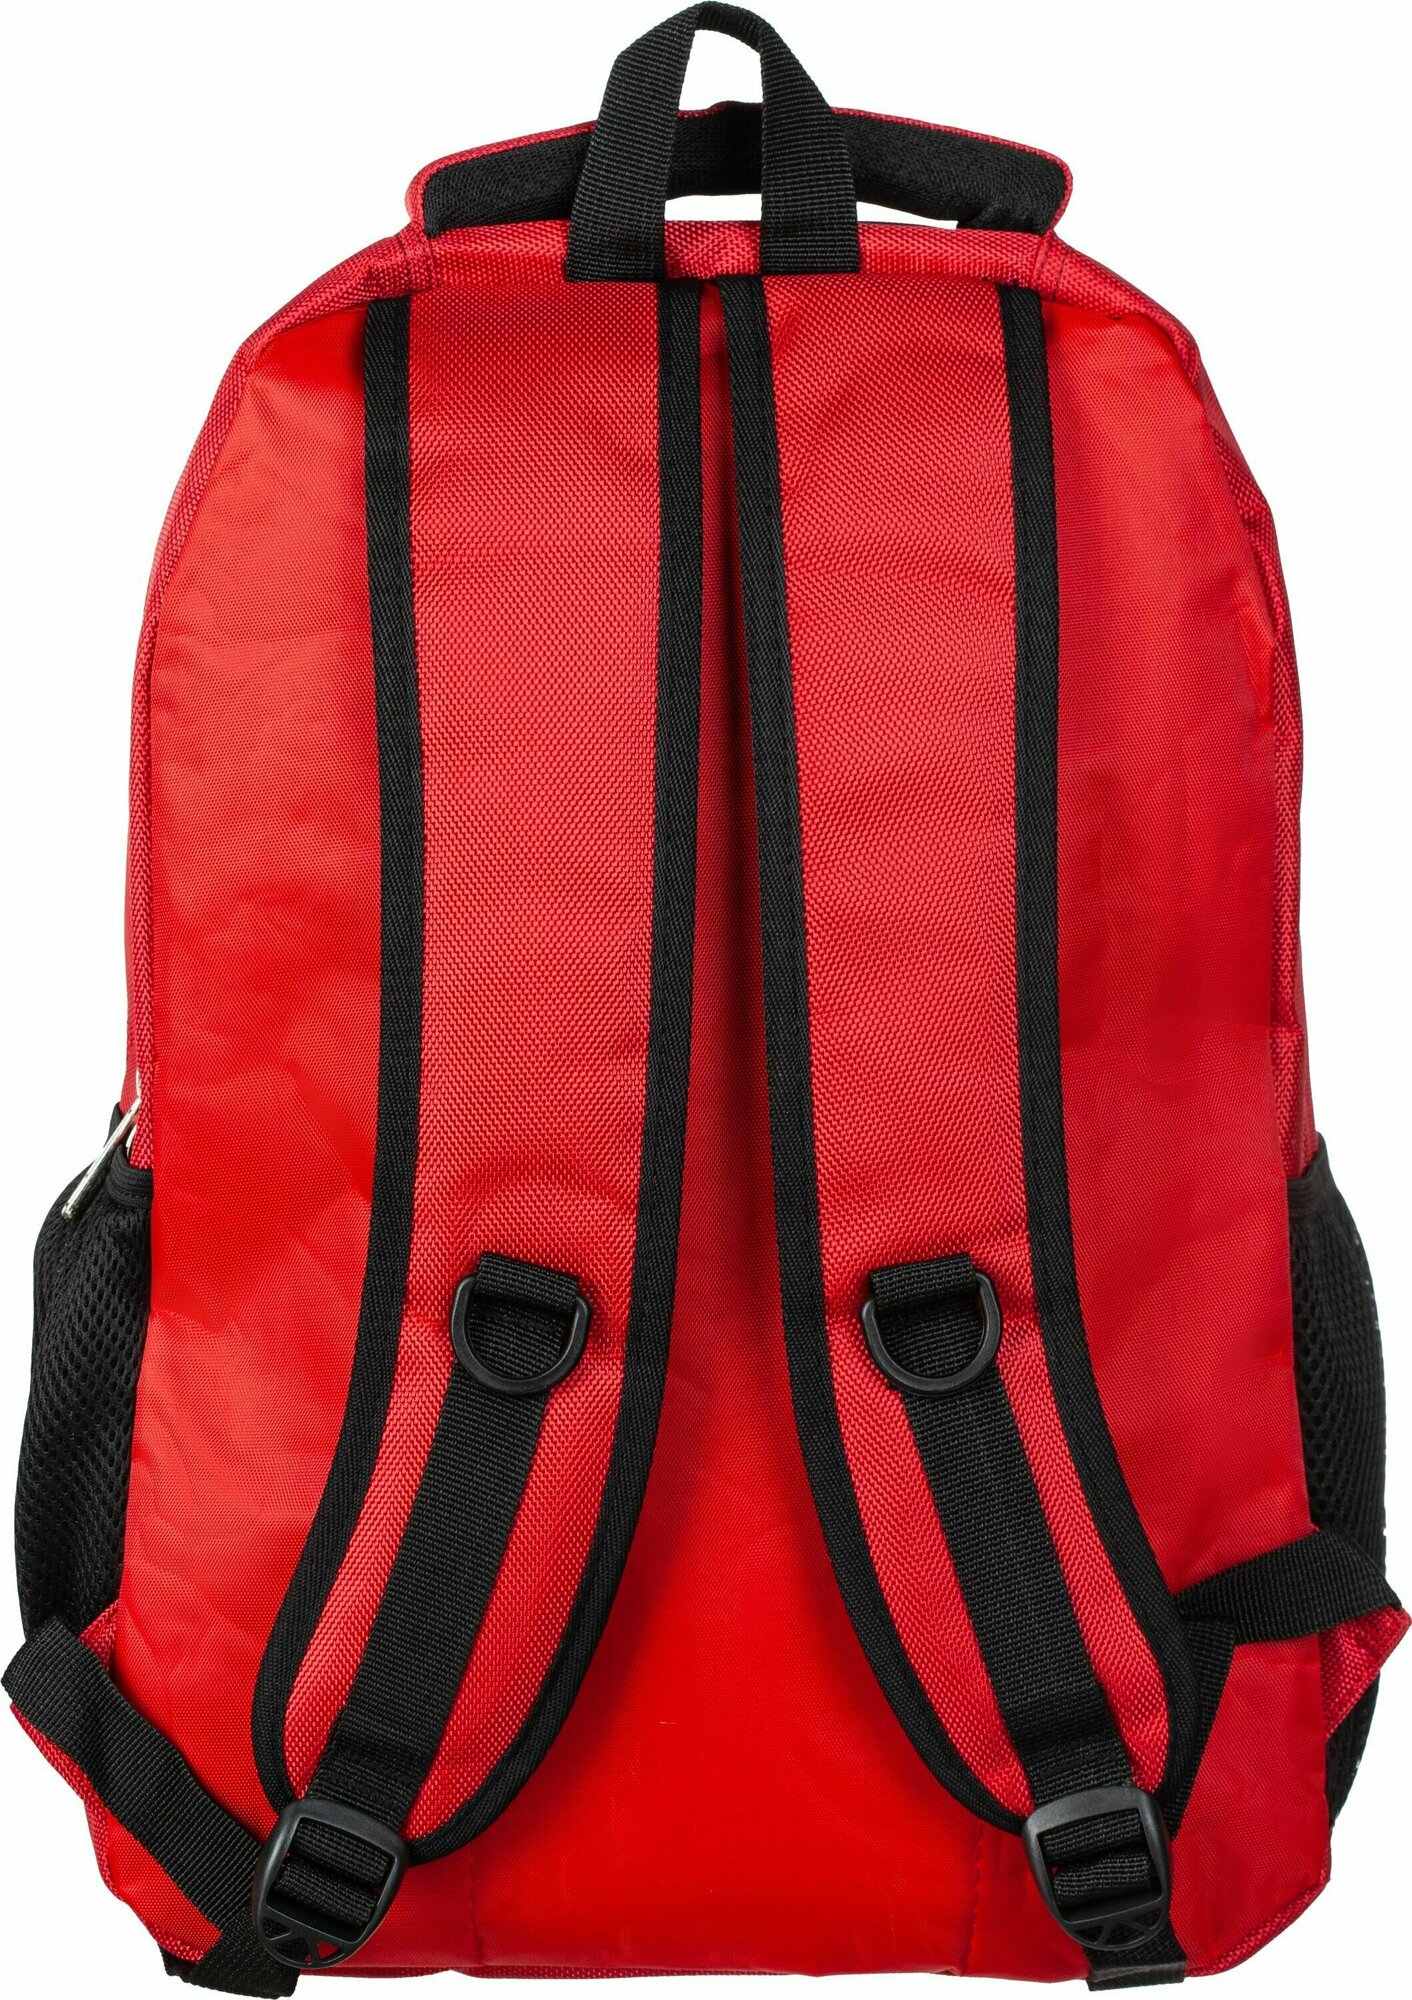 Рюкзак мужской №1 School, 3 отделения, 2 кармана, бордовый